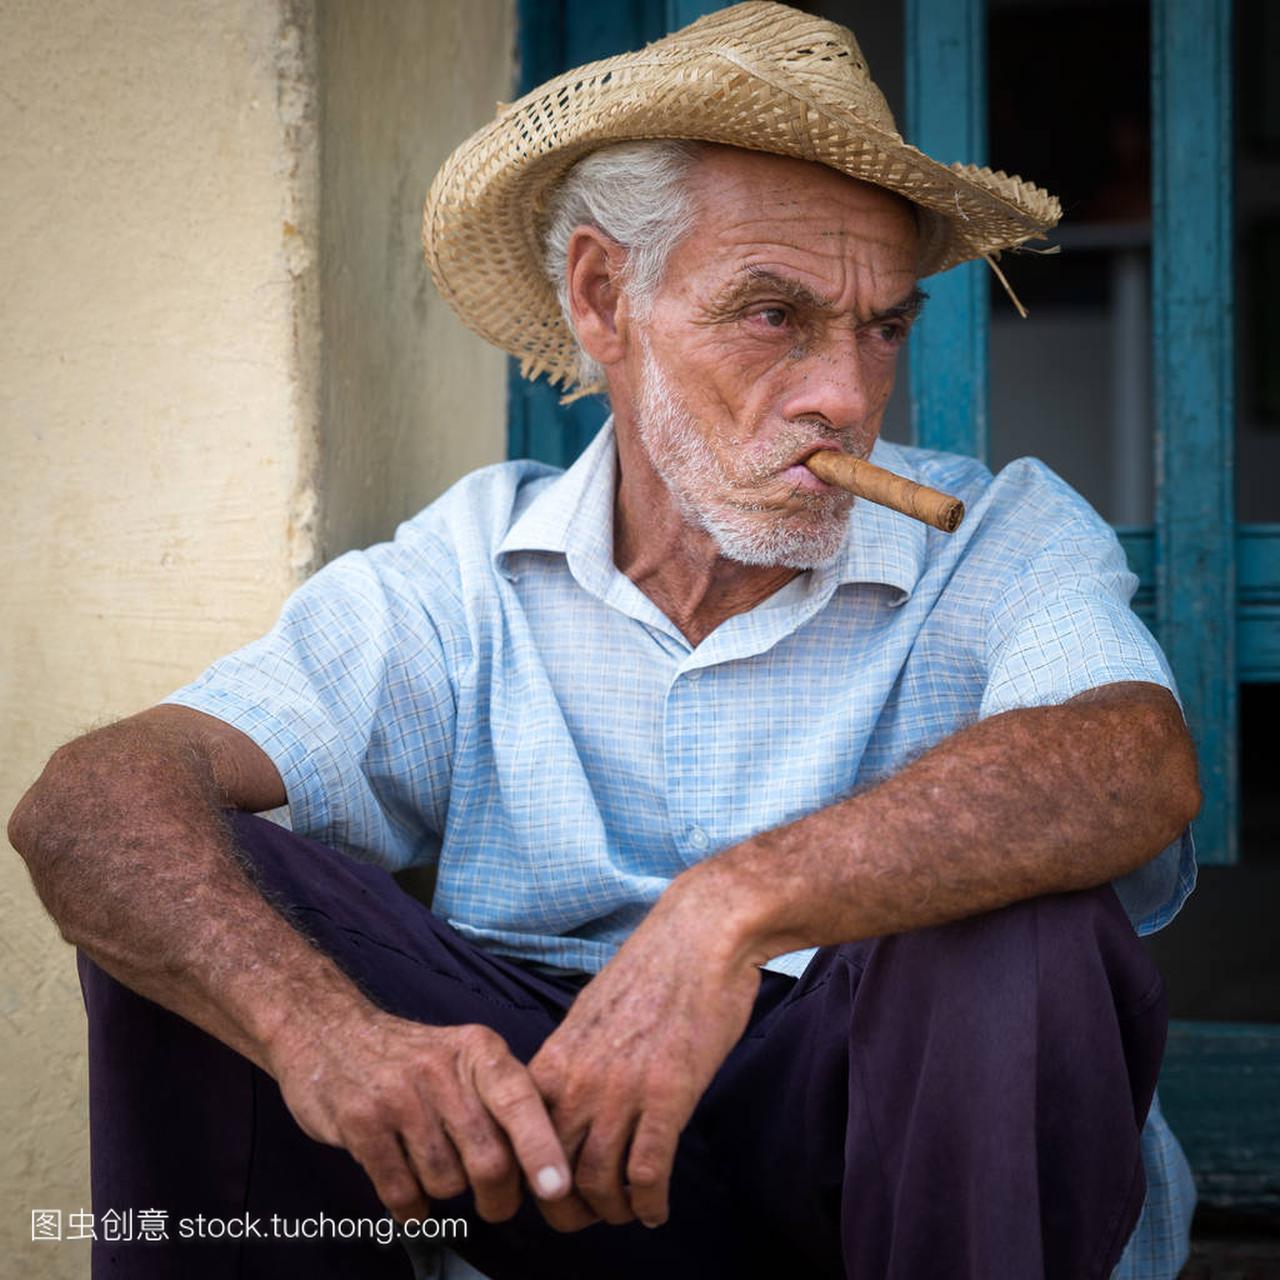 古巴人吸烟 sigar 的肖像